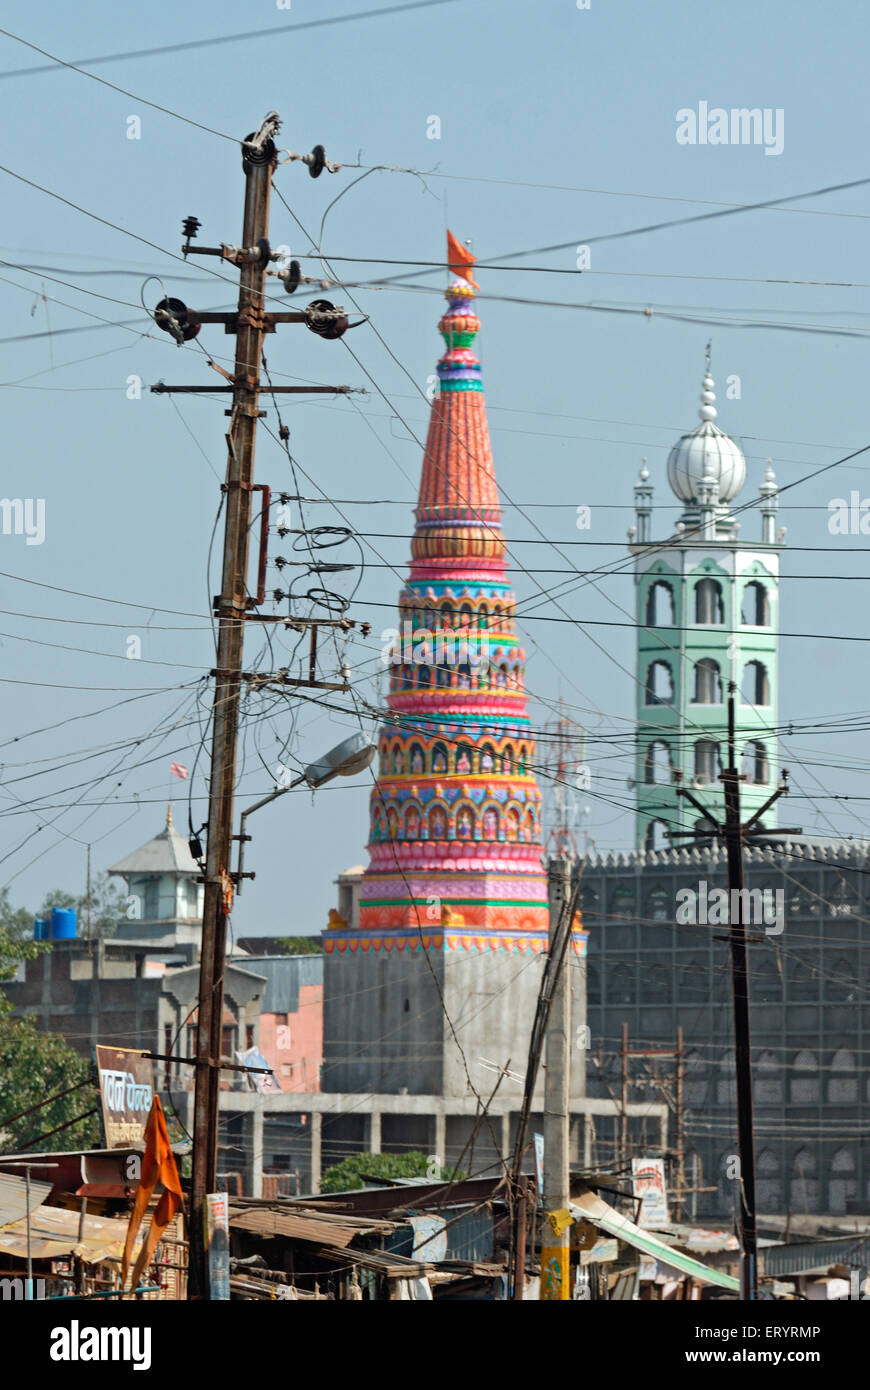 Mezquita y domos del templo, robo de energía, cables eléctricos enredados, Malegaon ; Maharashtra ; India , asia Foto de stock